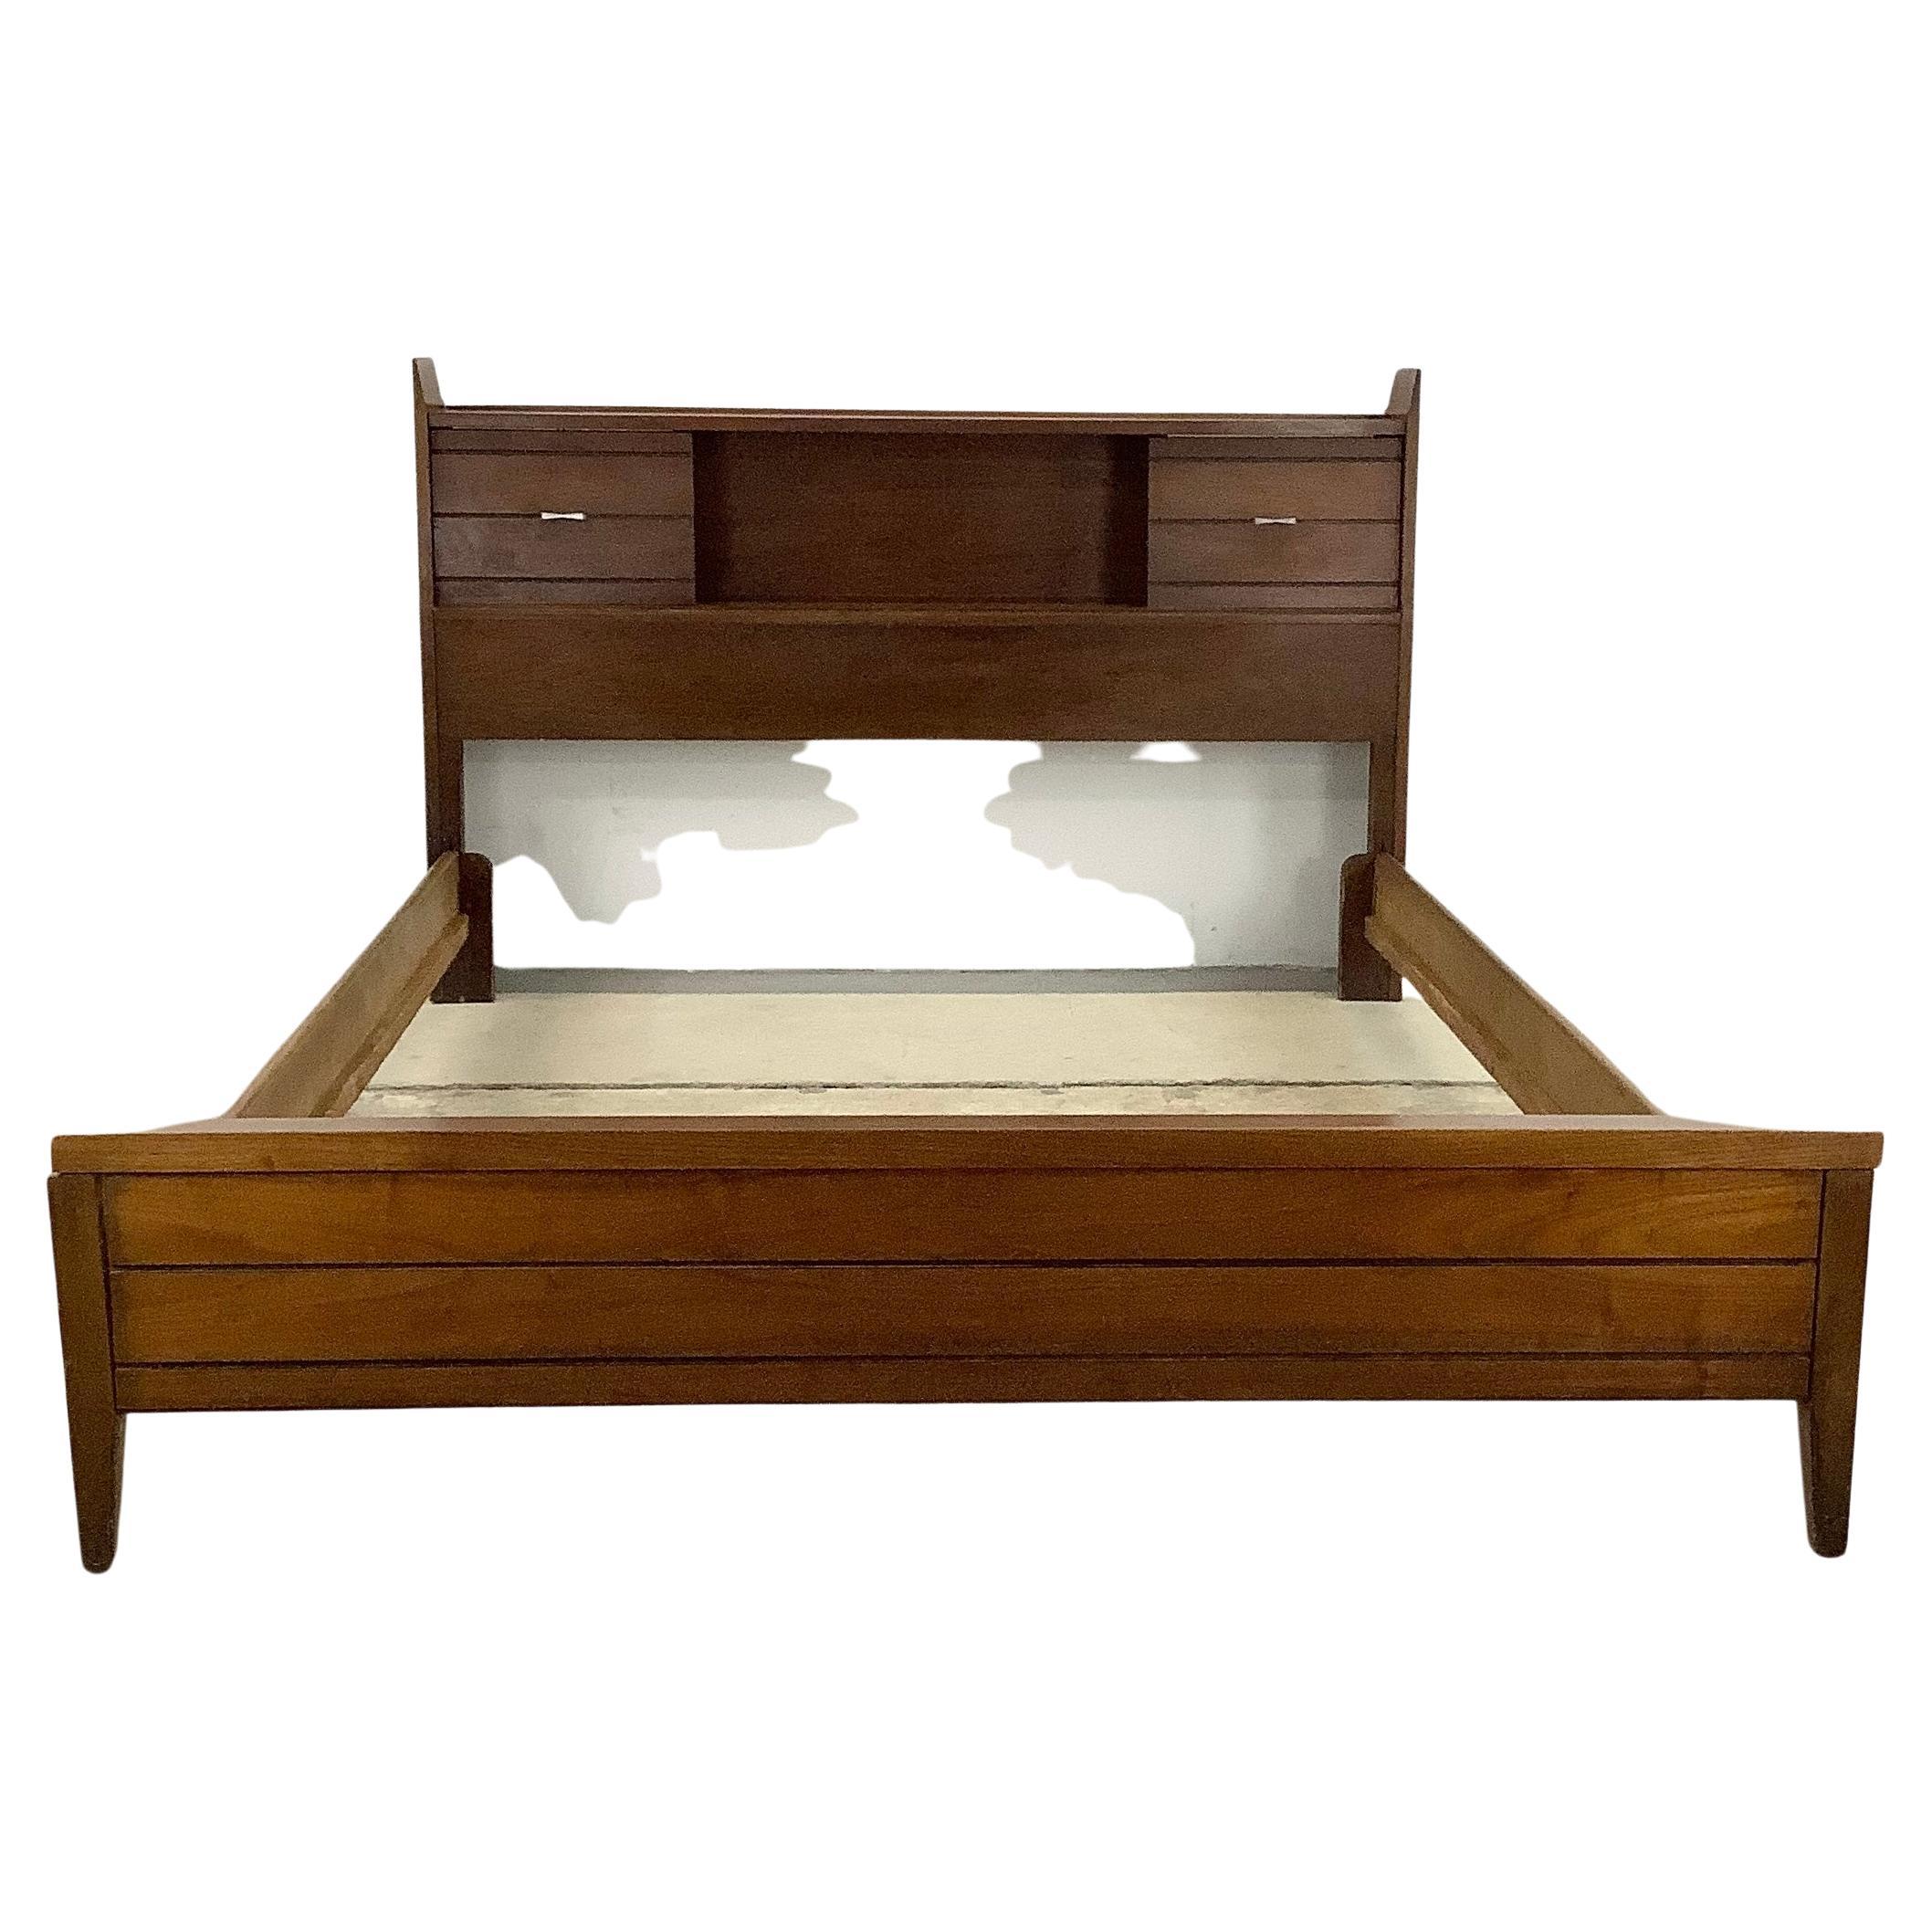 Midcentury Tuxedo Style Storage Bed Frame, Full Size